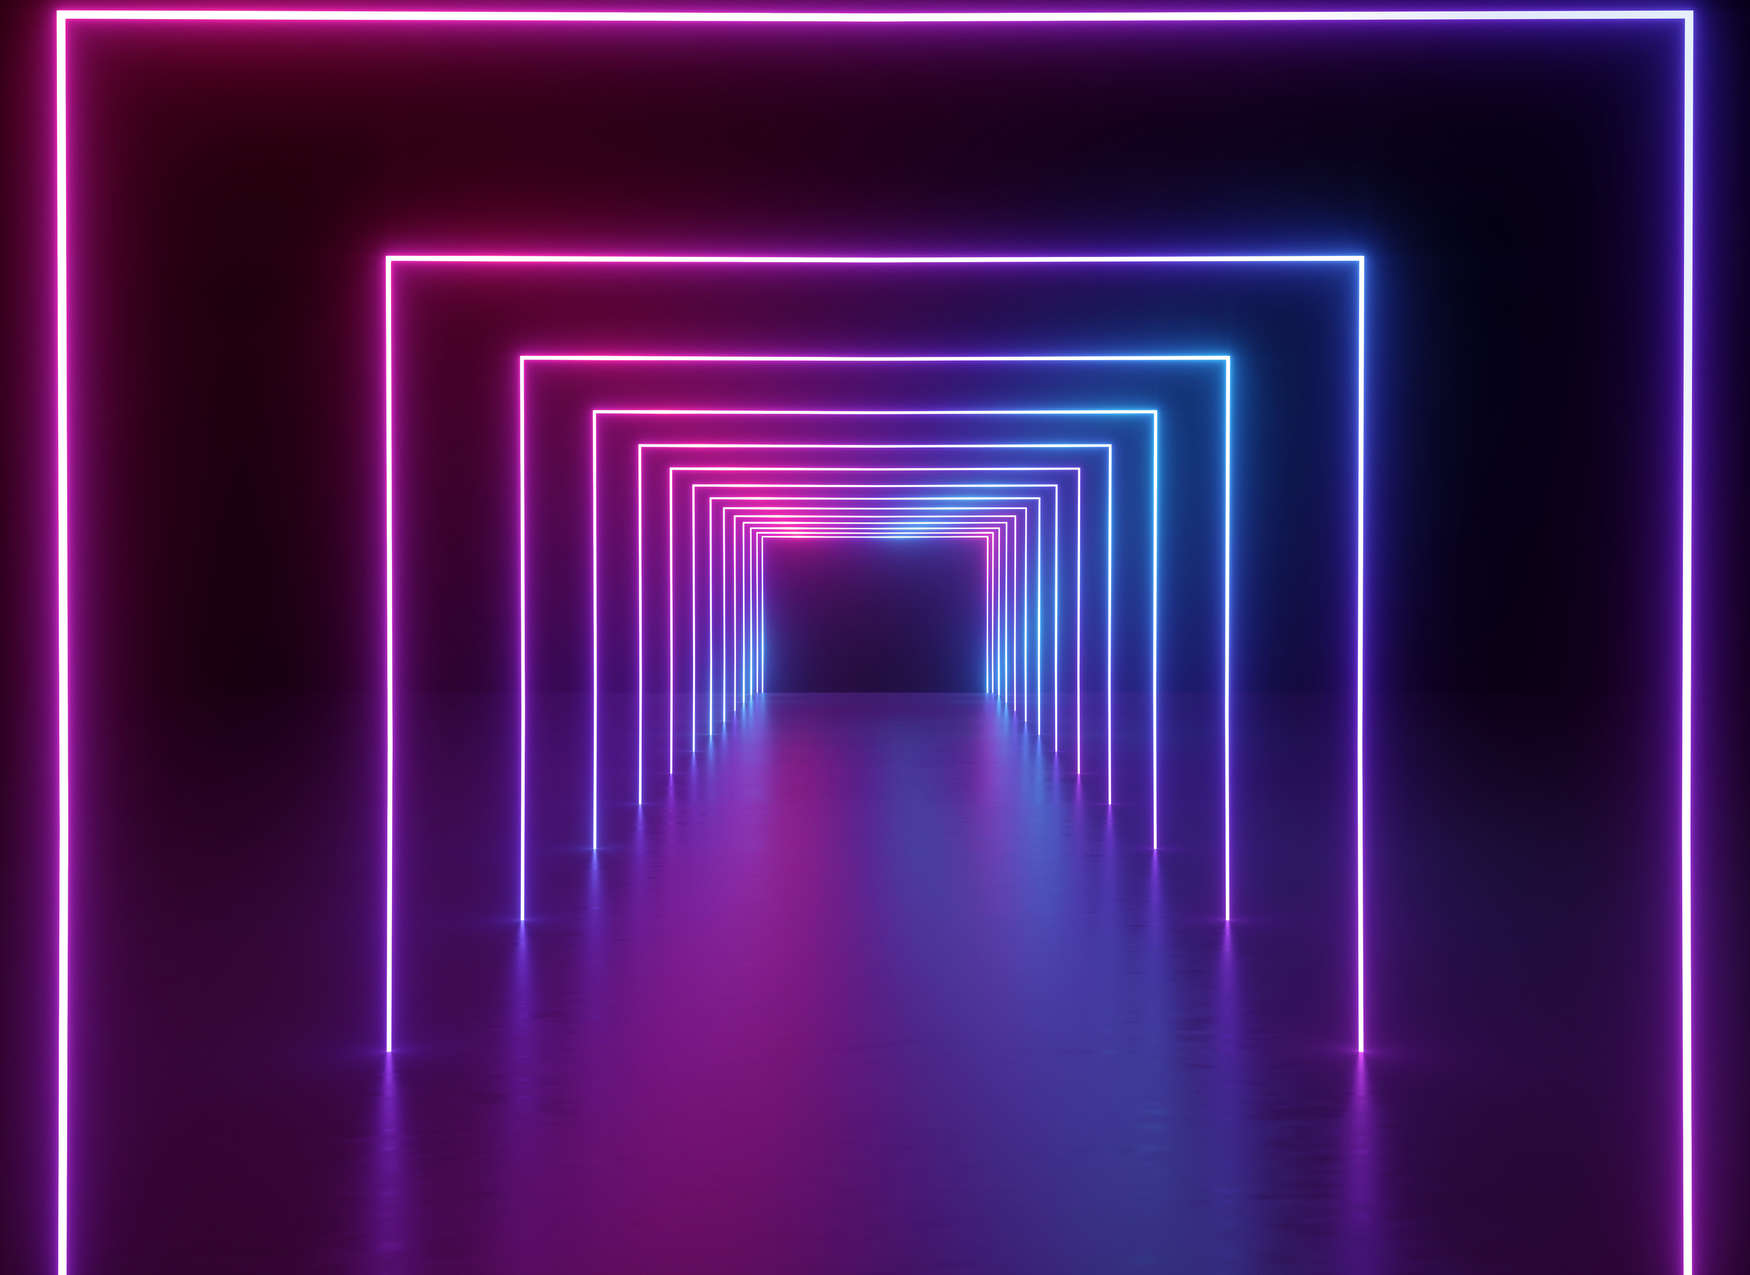             Fotomurali Camera con corridoio lungo Colori LED - Viola, Blu, Neon
        